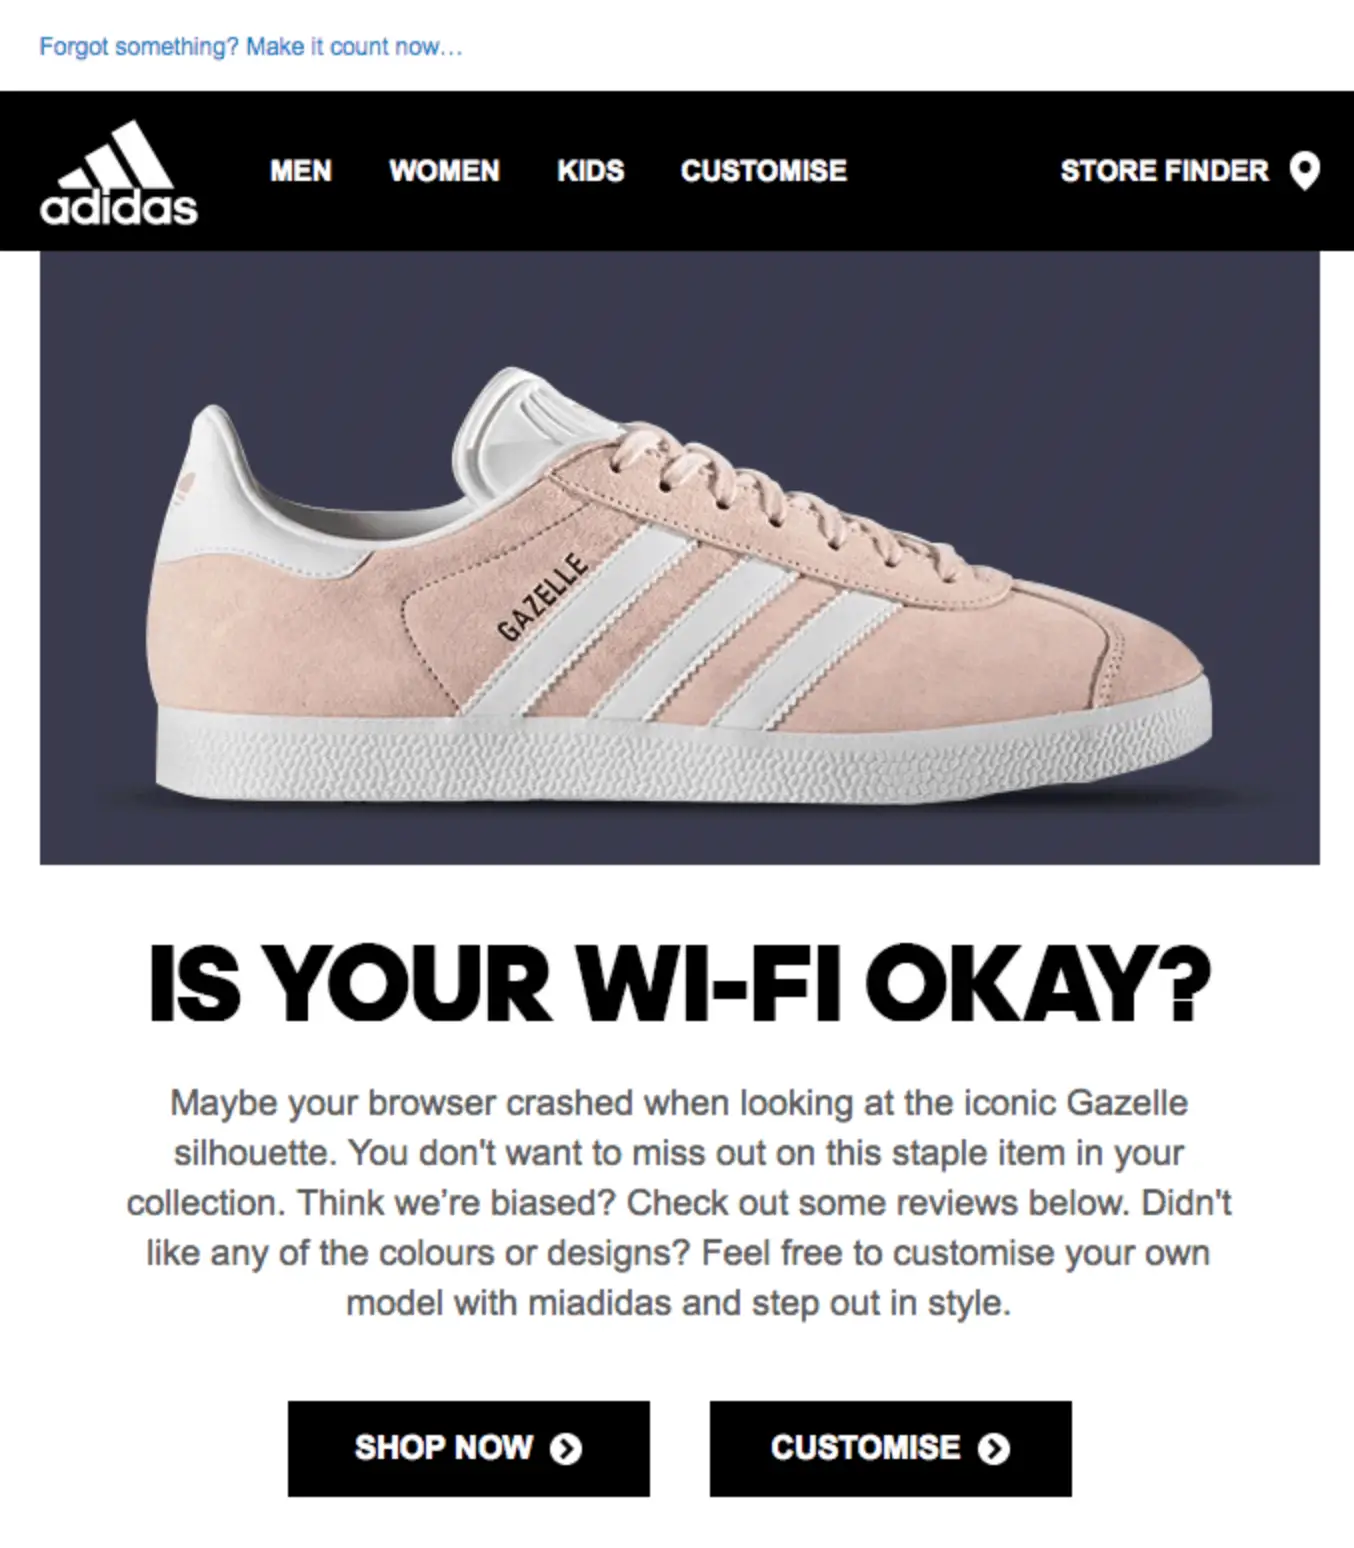 Adidas abandoned cart reminder email